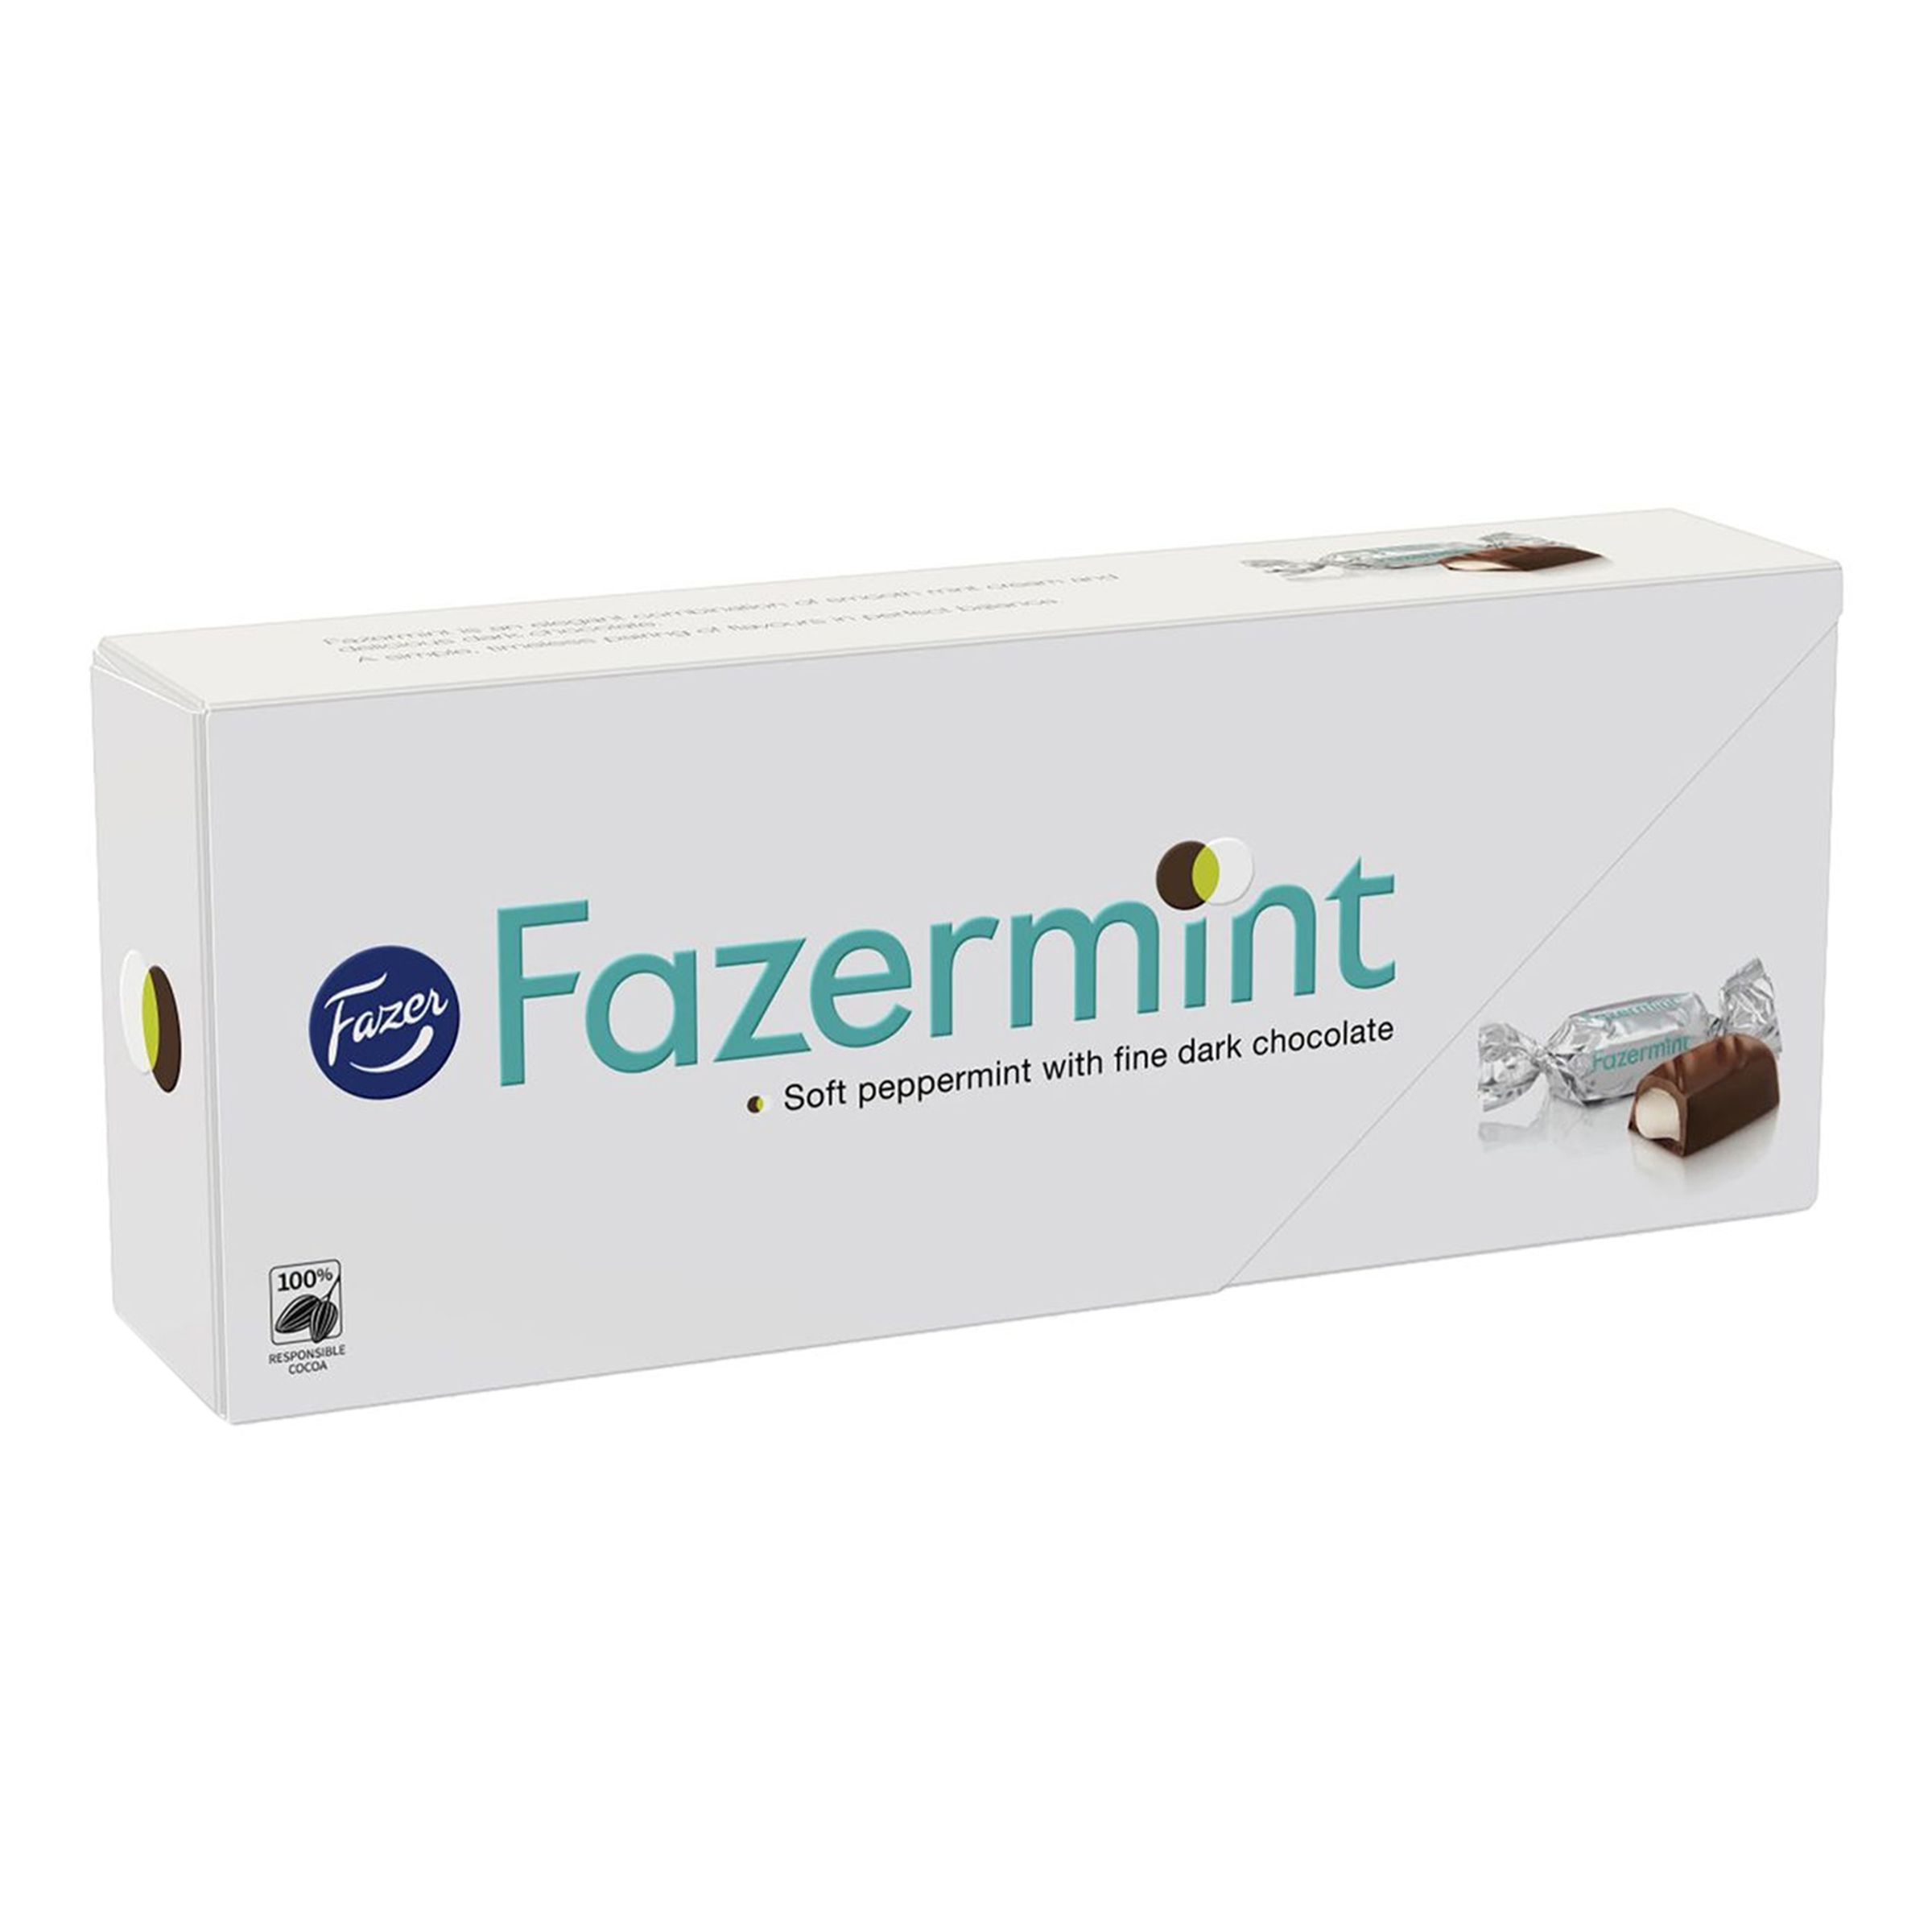 Fazermint Chokladask - 228 gram